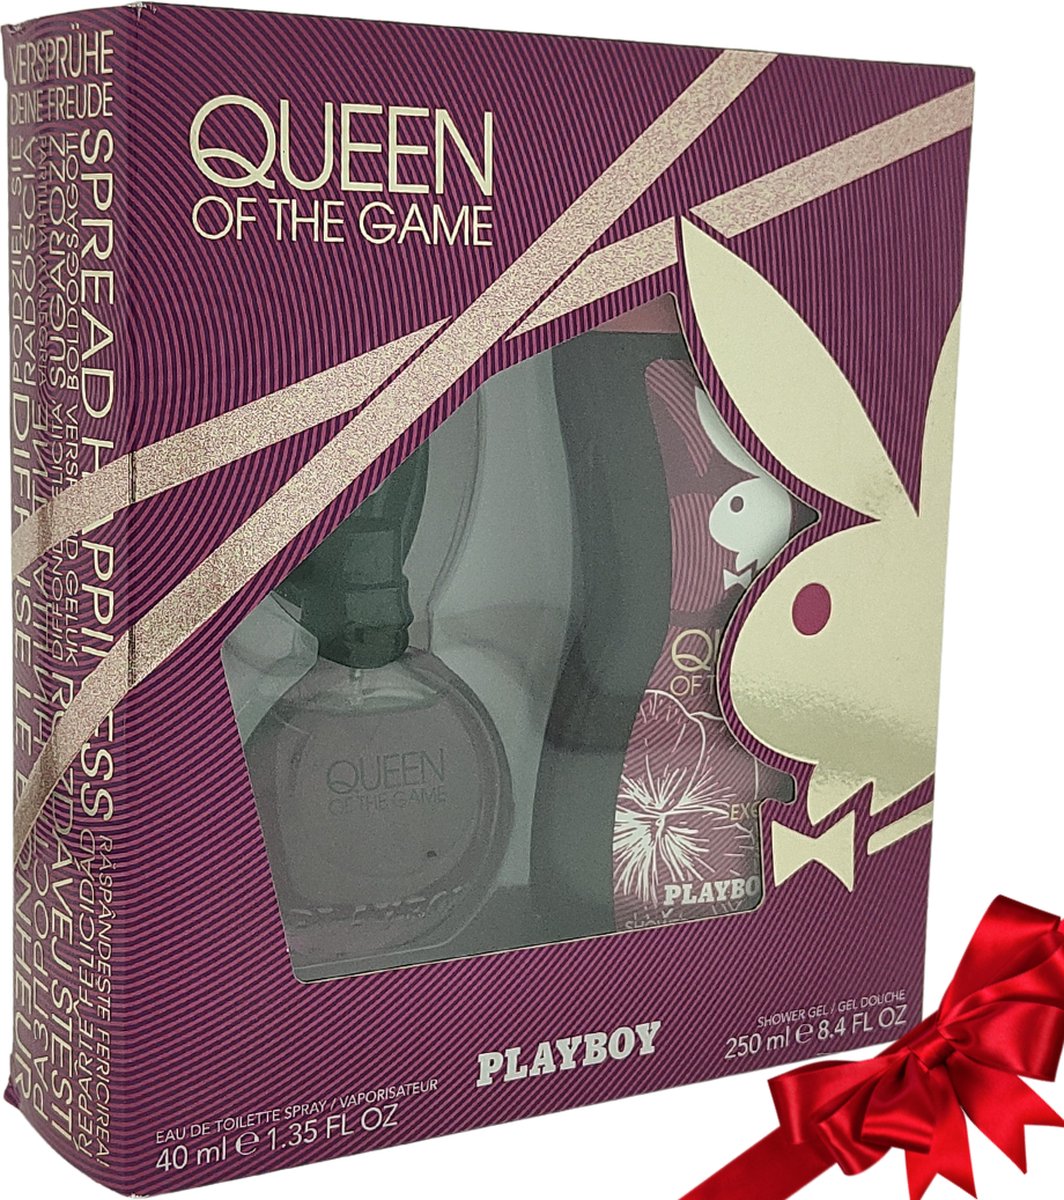 Playboy Queen Of The Game Geurengeschenk Set - 2 Delig